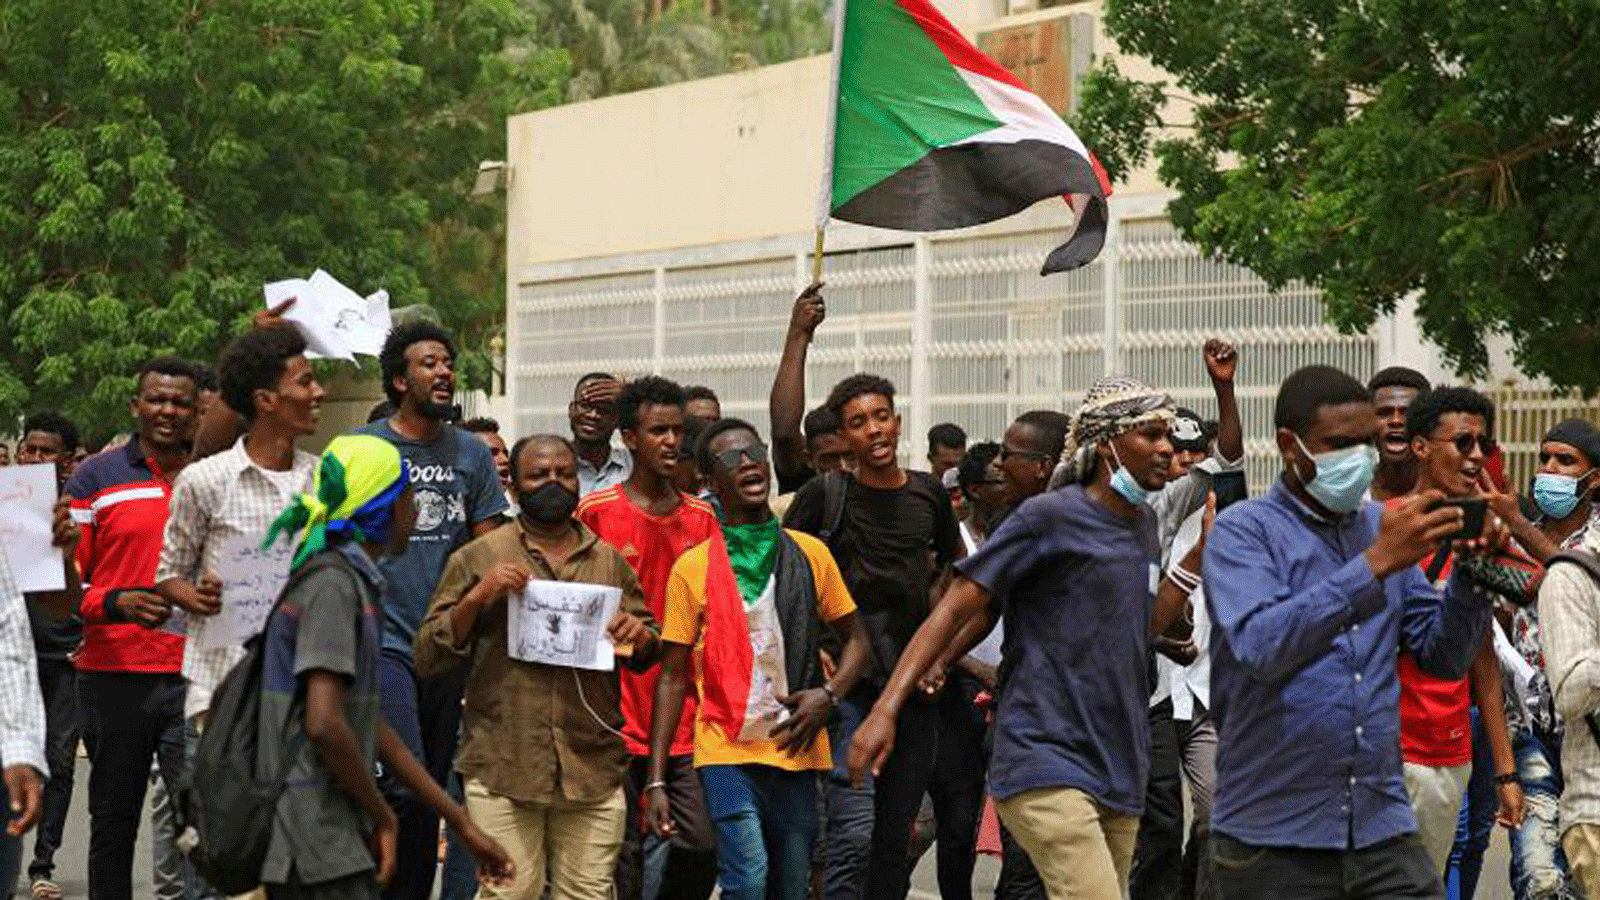 محتجون سودانيون يرددون هتافات ويلوحون بالعلم الوطني لبلادهم أثناء مسيرة في العاصمة الخرطوم.